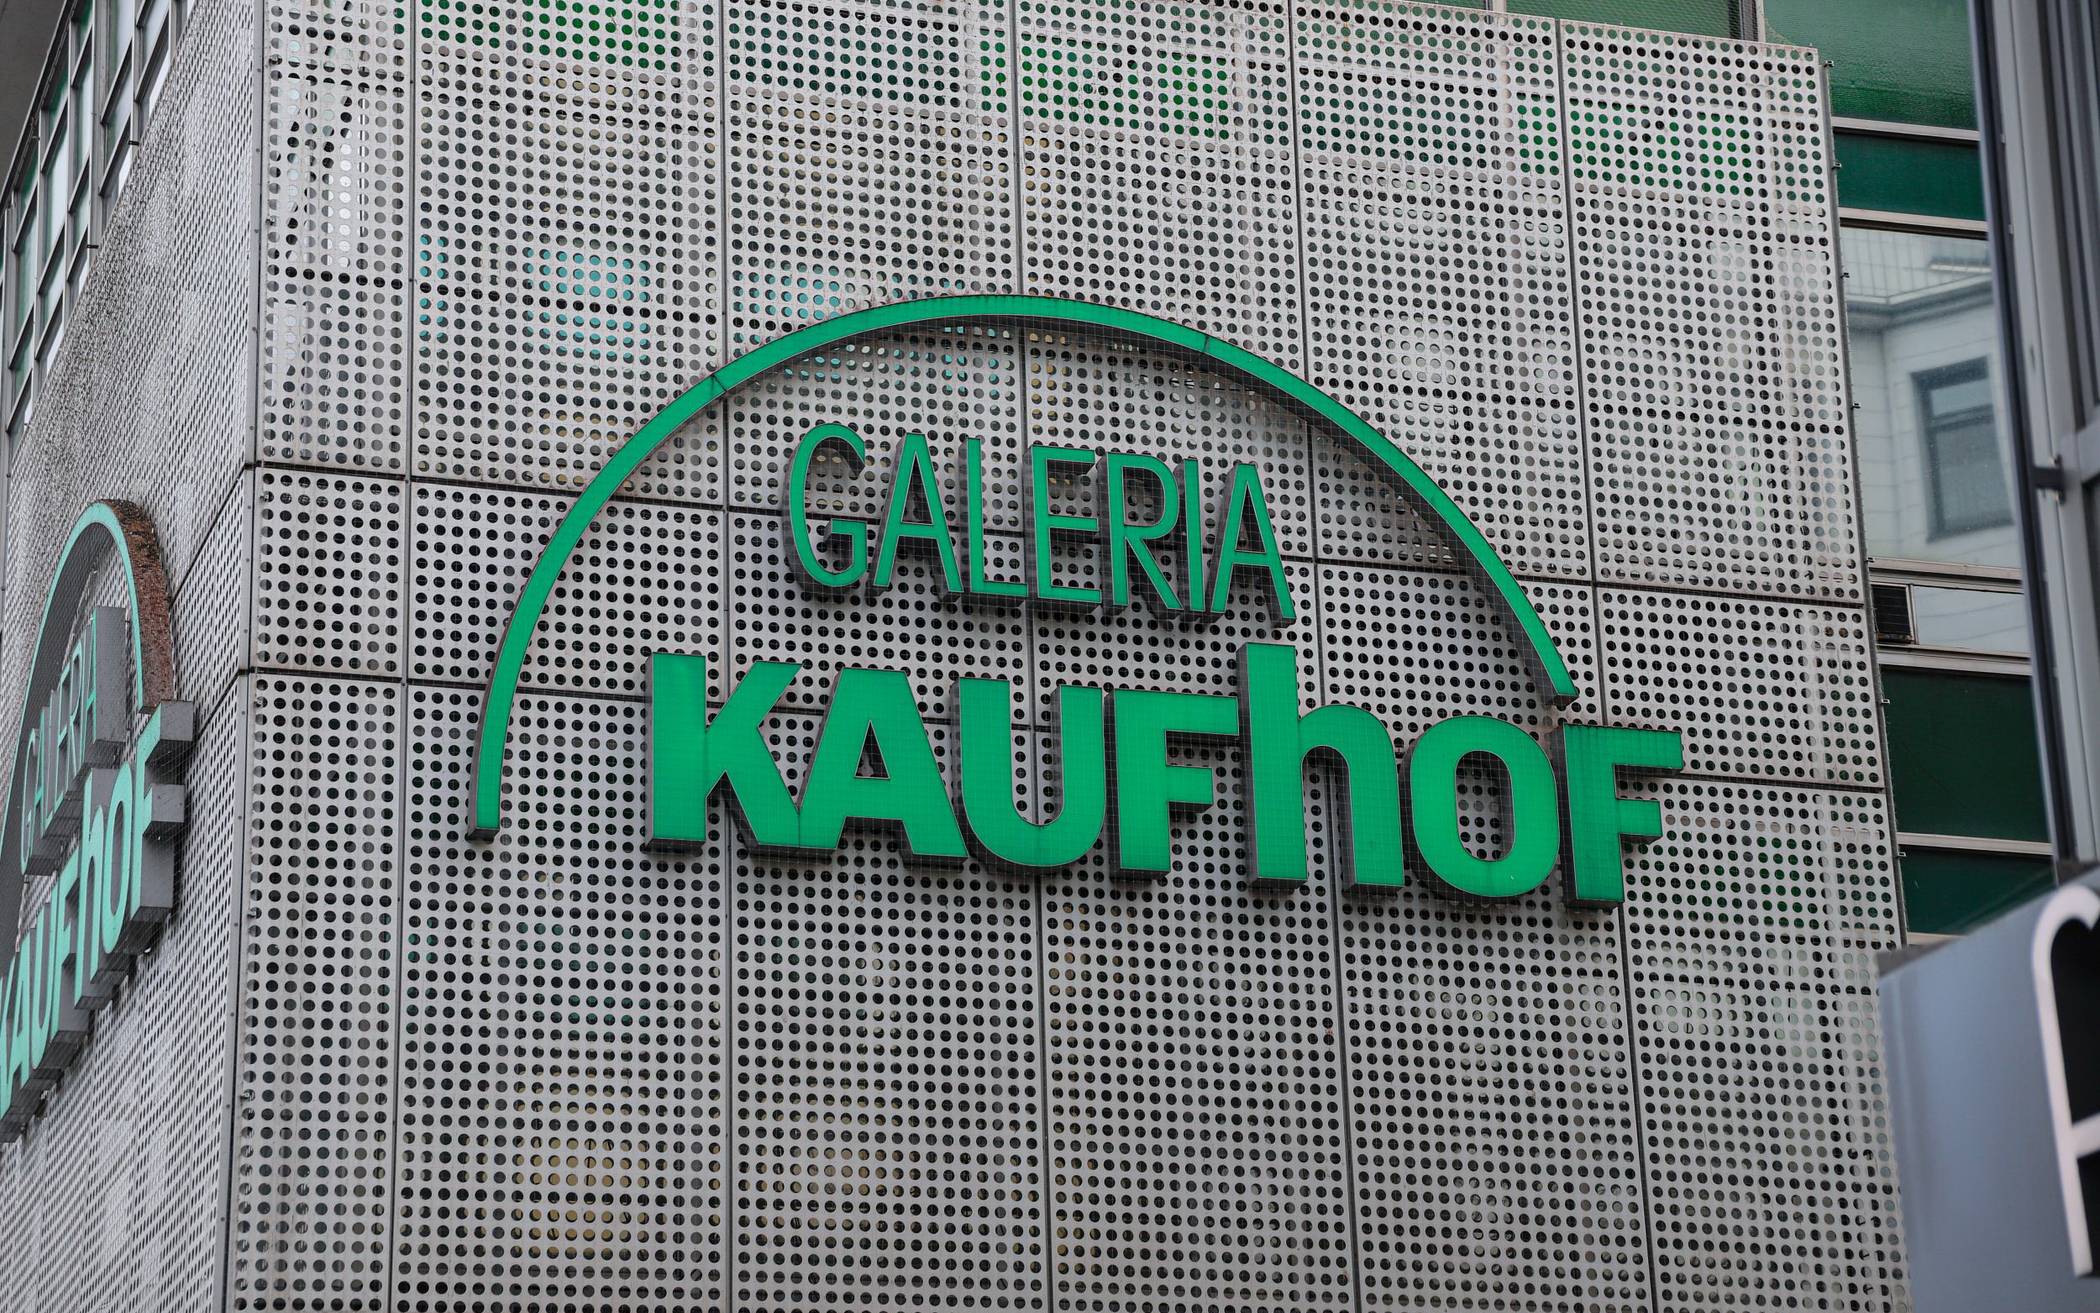 Das Logo an der Fassade der Wuppertaler Galeria Kaufhof.